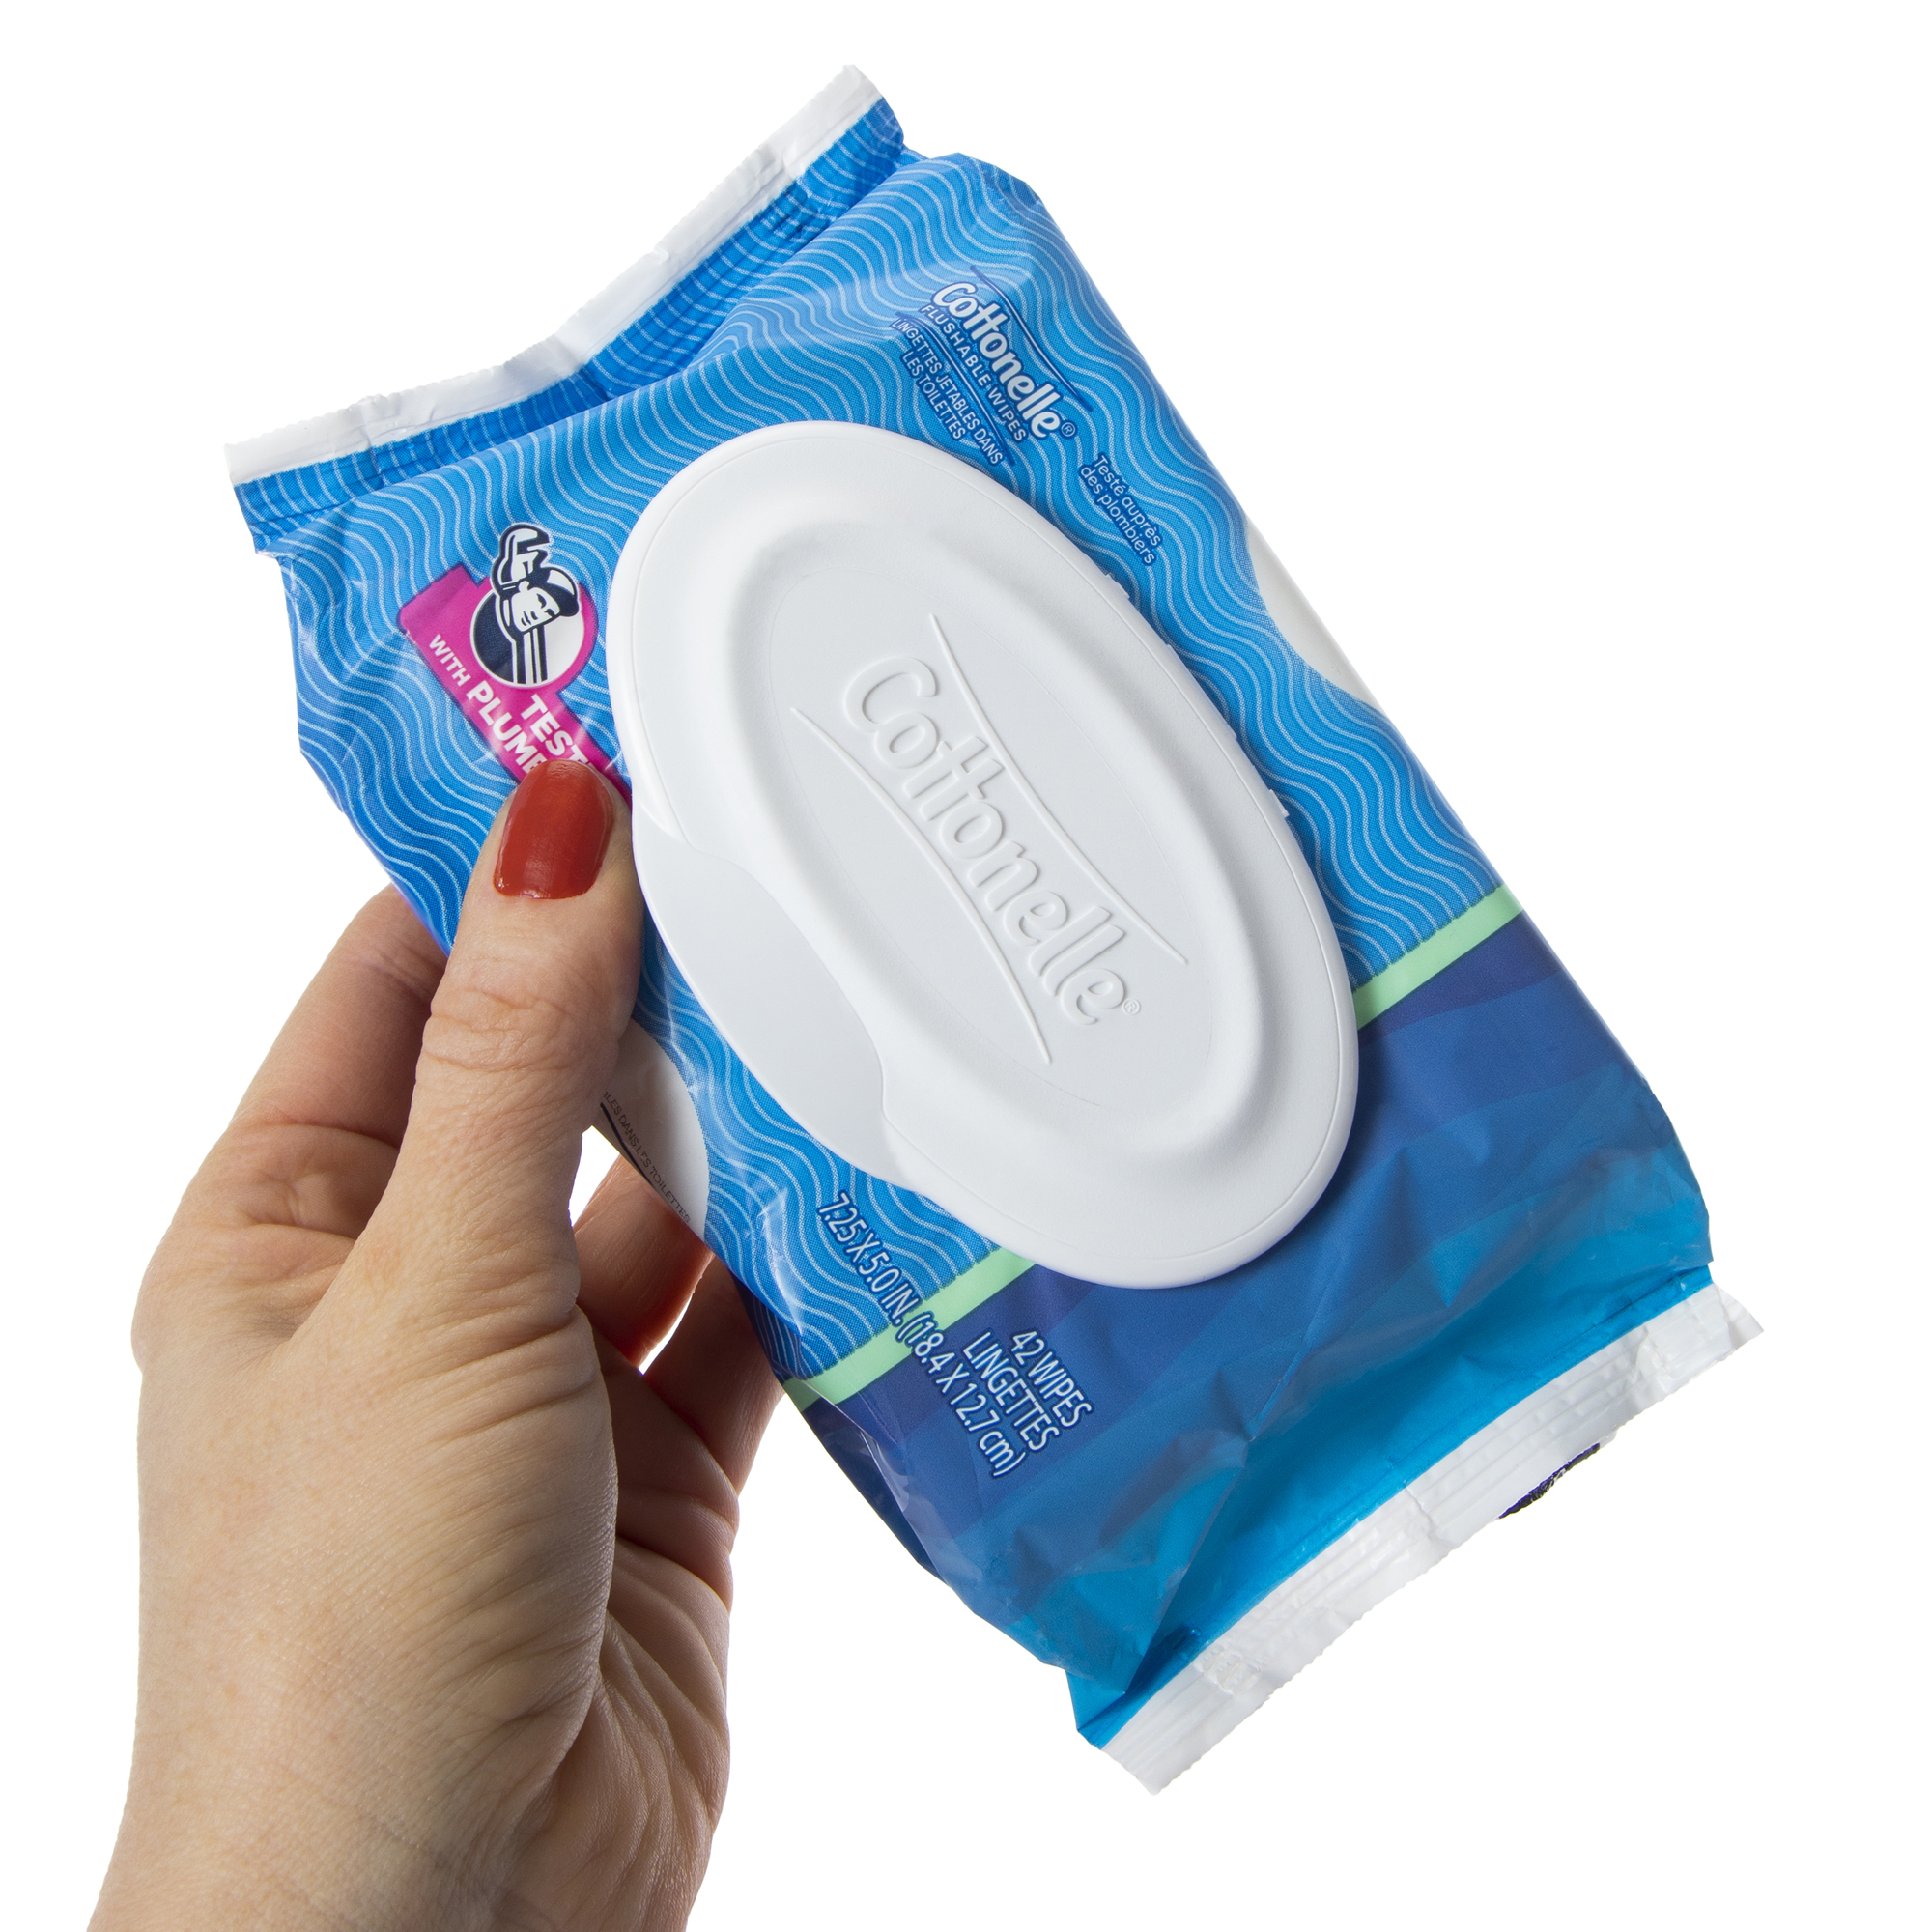 cottonelle® flushable wipes 84-count